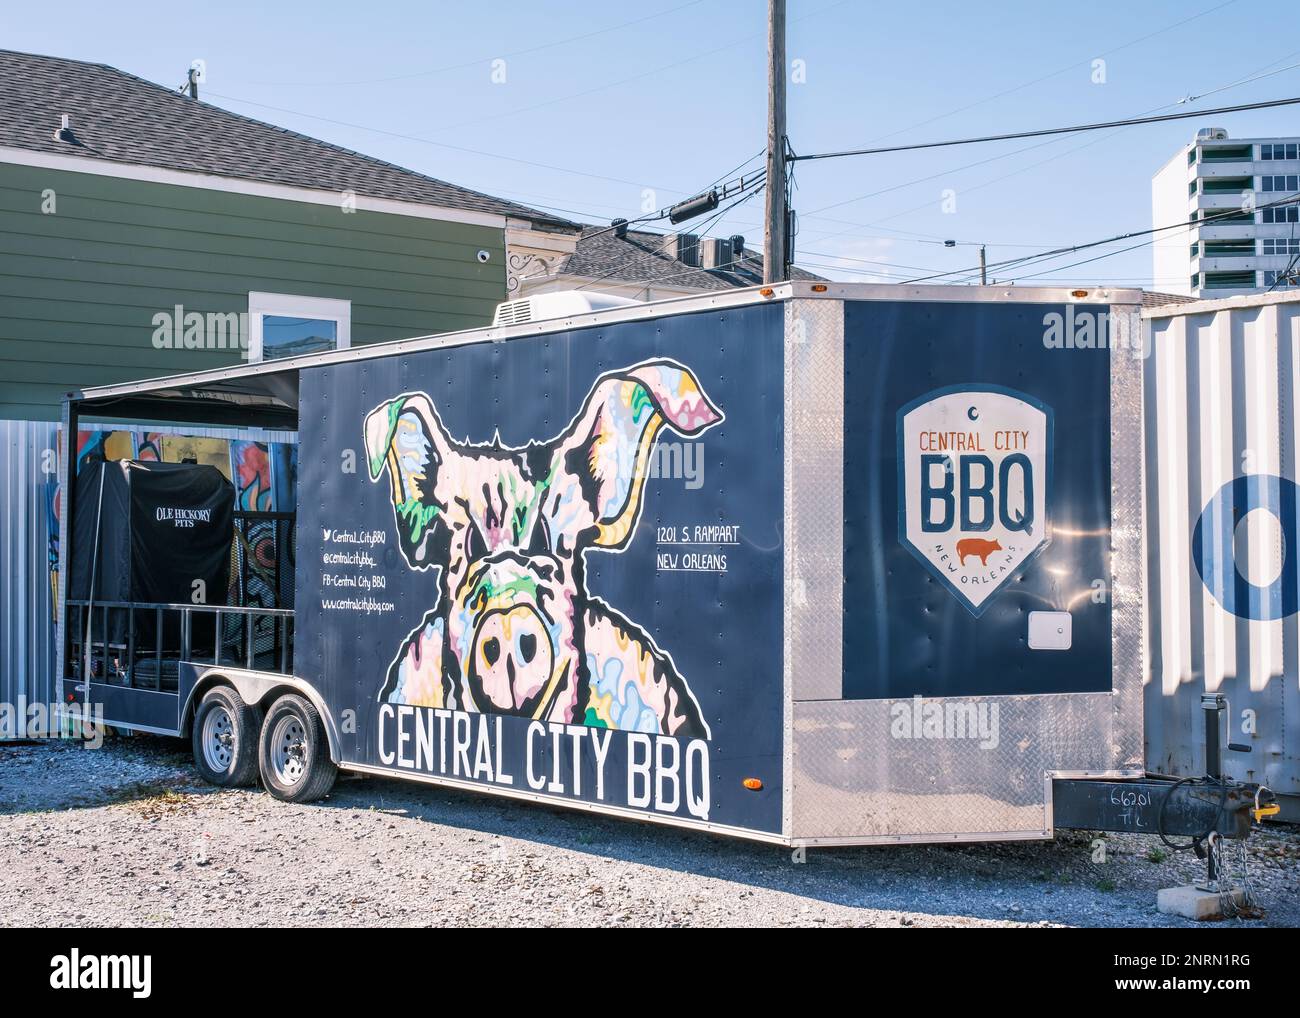 NEW ORLEANS, LA, USA - 5. FEBRUAR 2023: Central City BBQ Restaurant's Mobile Raucher parkt auf dem Restaurantplatz und ist für Veranstaltungen verfügbar Stockfoto